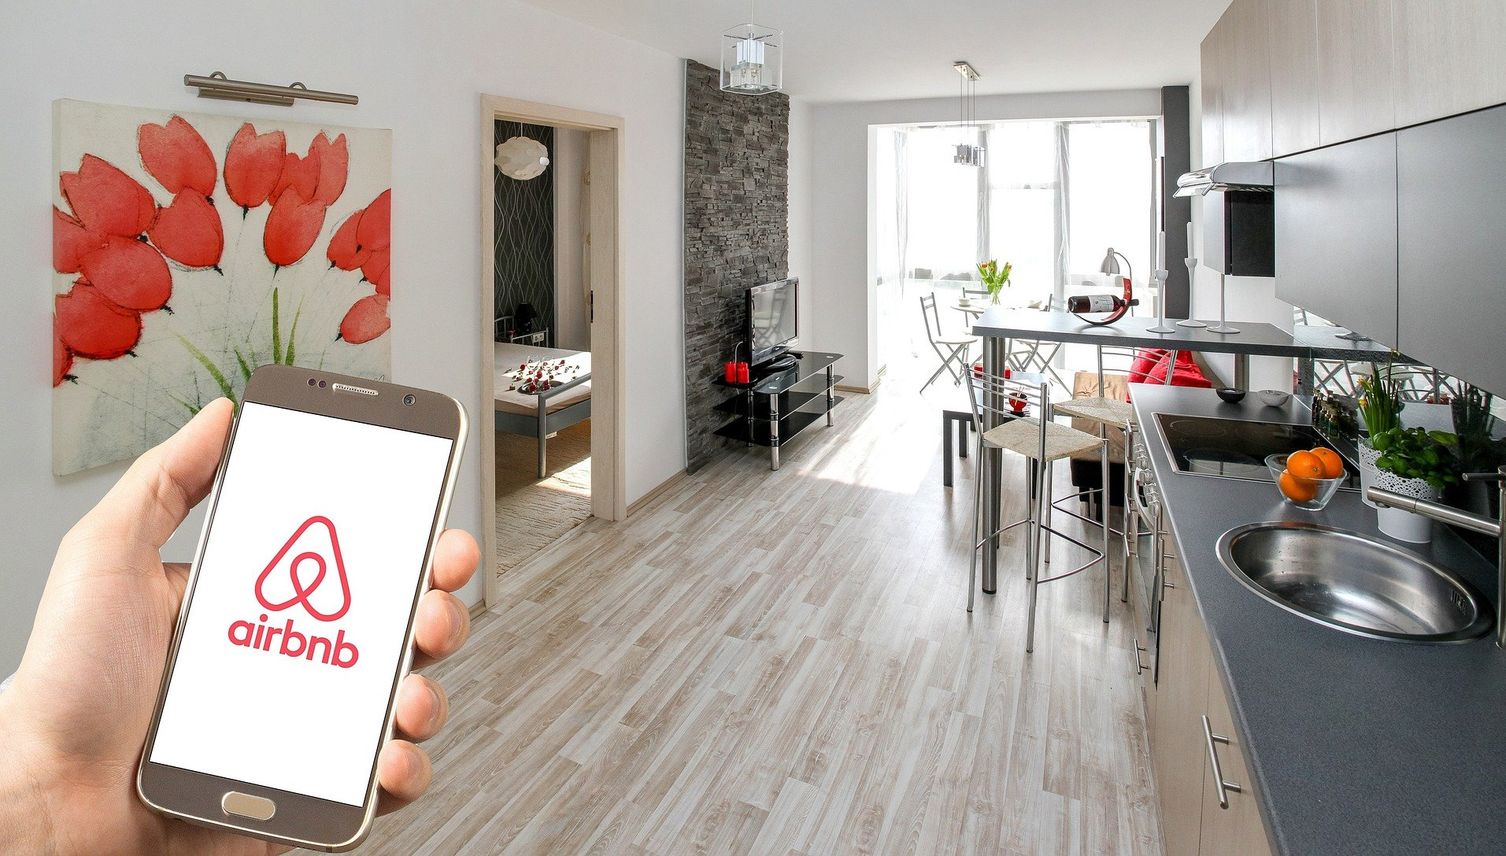 Luzerner Initiative führt zu einem Airbnb-Verbot